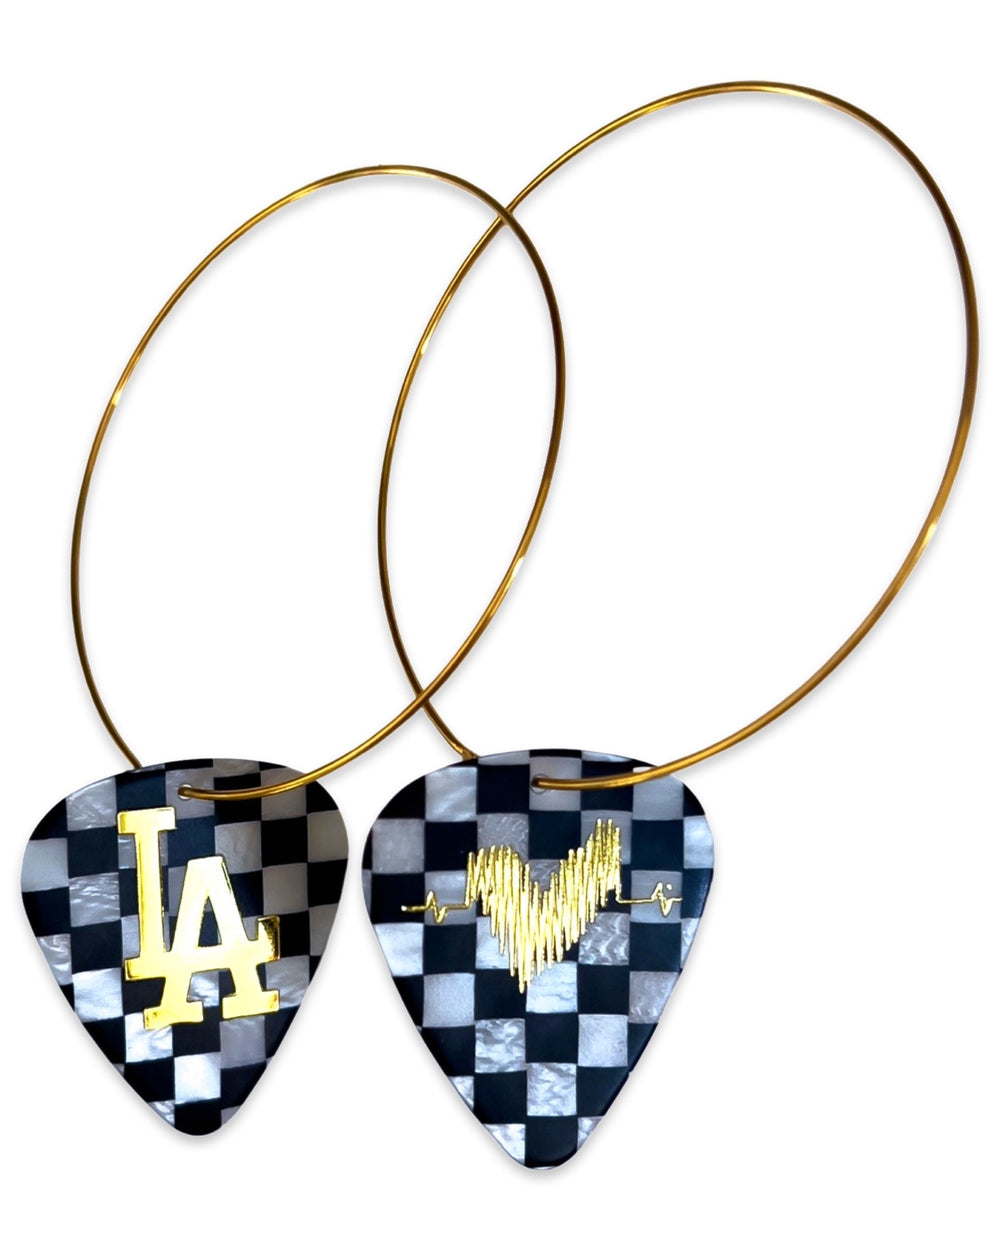 WS LA Checkerboard Single Guitar Pick Earrings